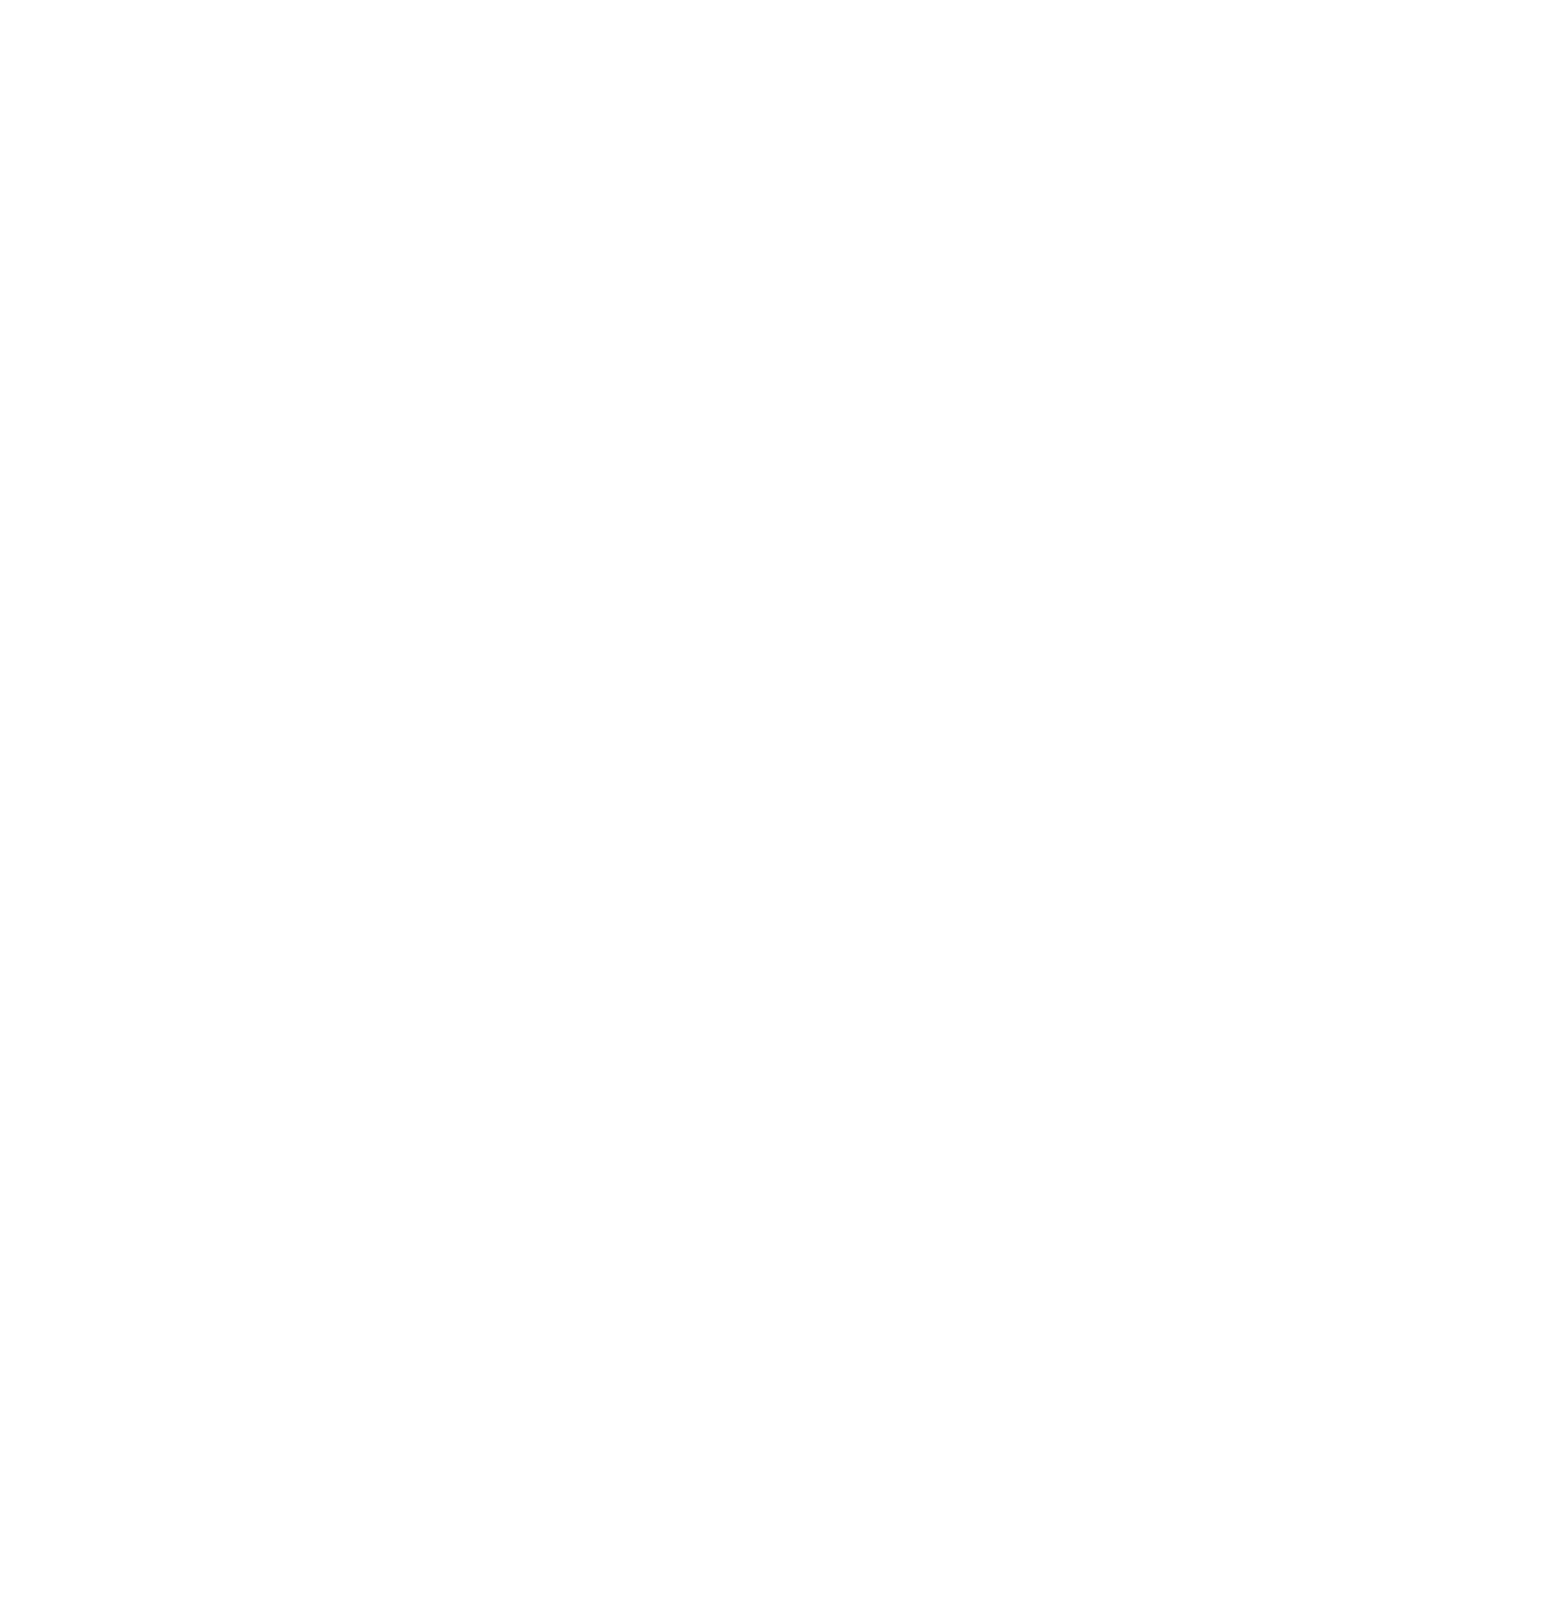 FirstCash logo for dark backgrounds (transparent PNG)